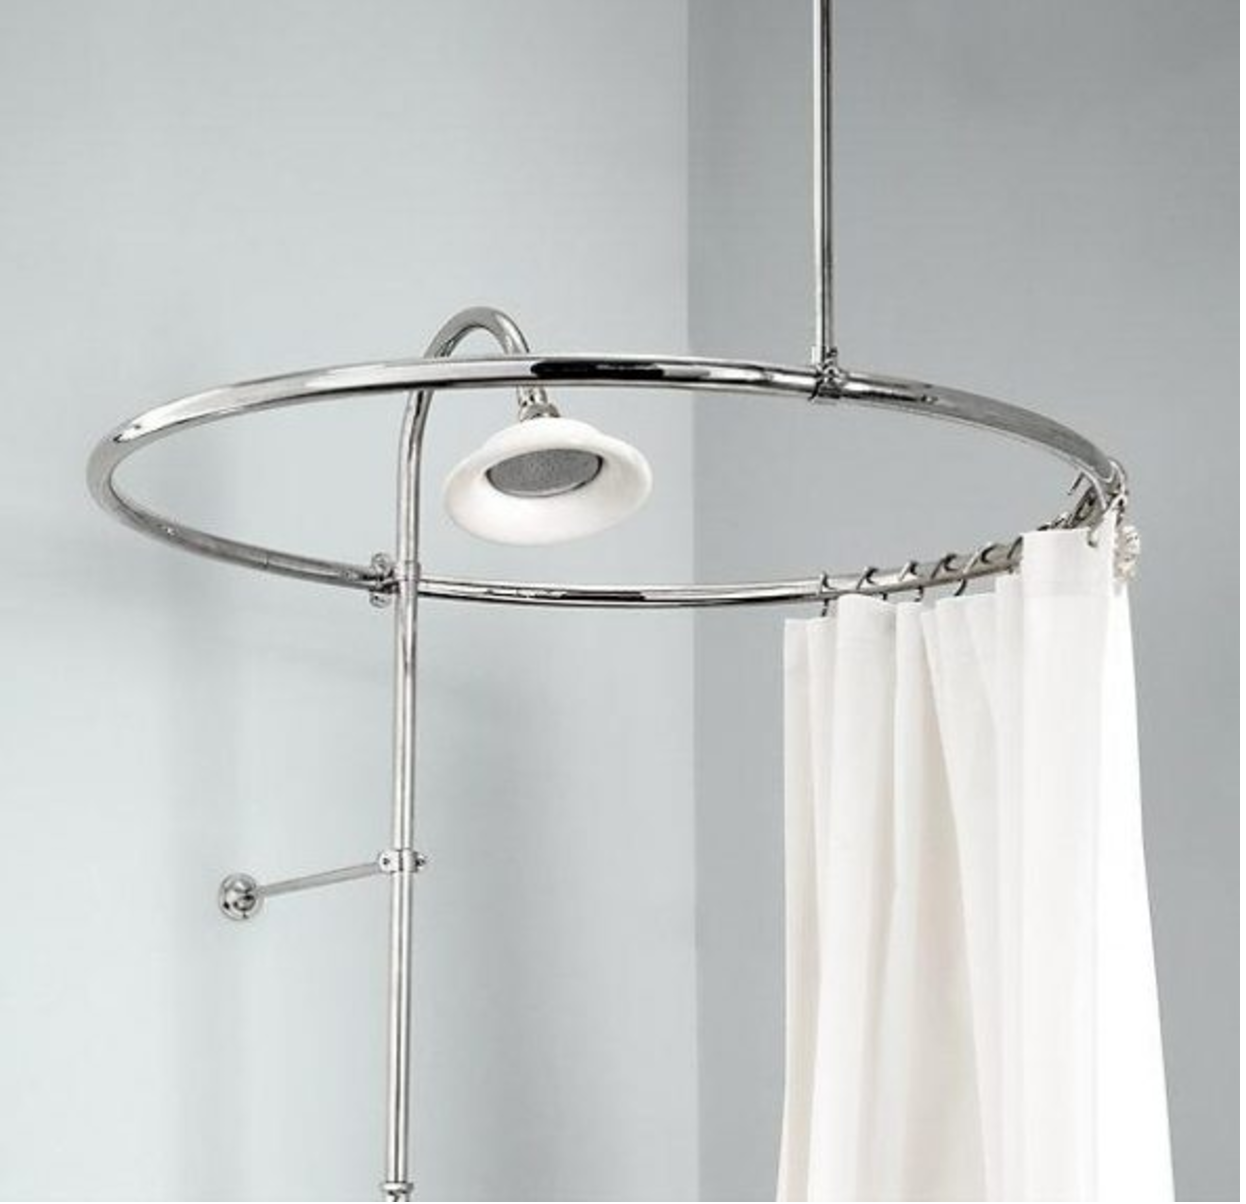 Штанга для шторки угловая. Карниз для ванны verran 690-09. Круглый карниз для шторы в ванную. Штанга для душевой шторки. Круглая штанга для шторы в ванную.